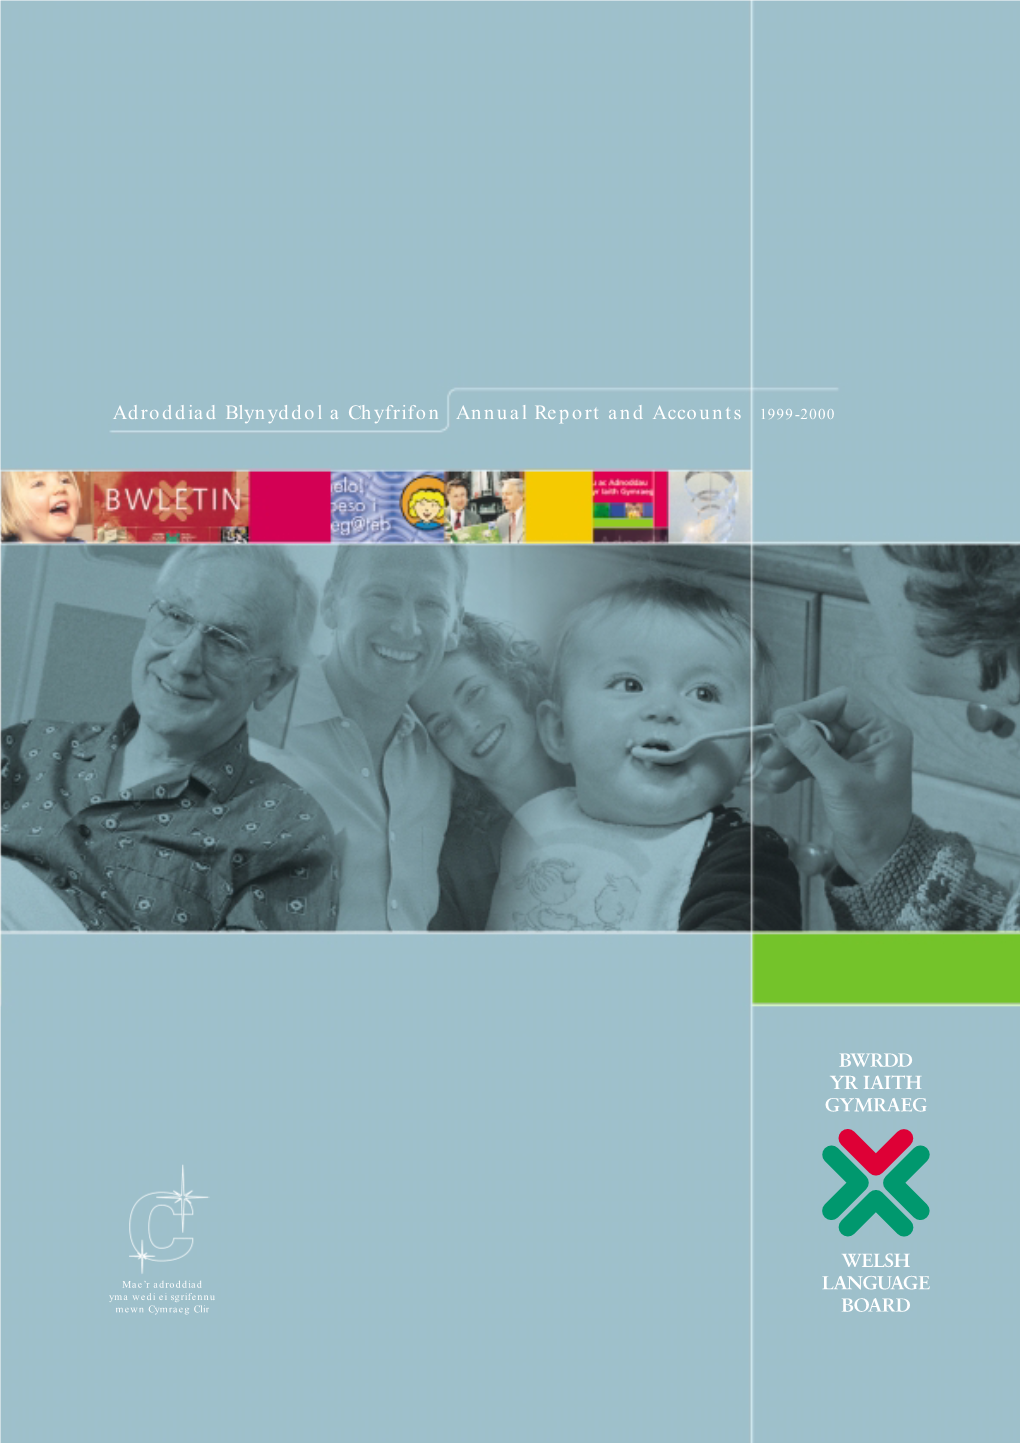 Adroddiad Blynyddol a Chyfrifon Annual Report and Accounts 1999-2000